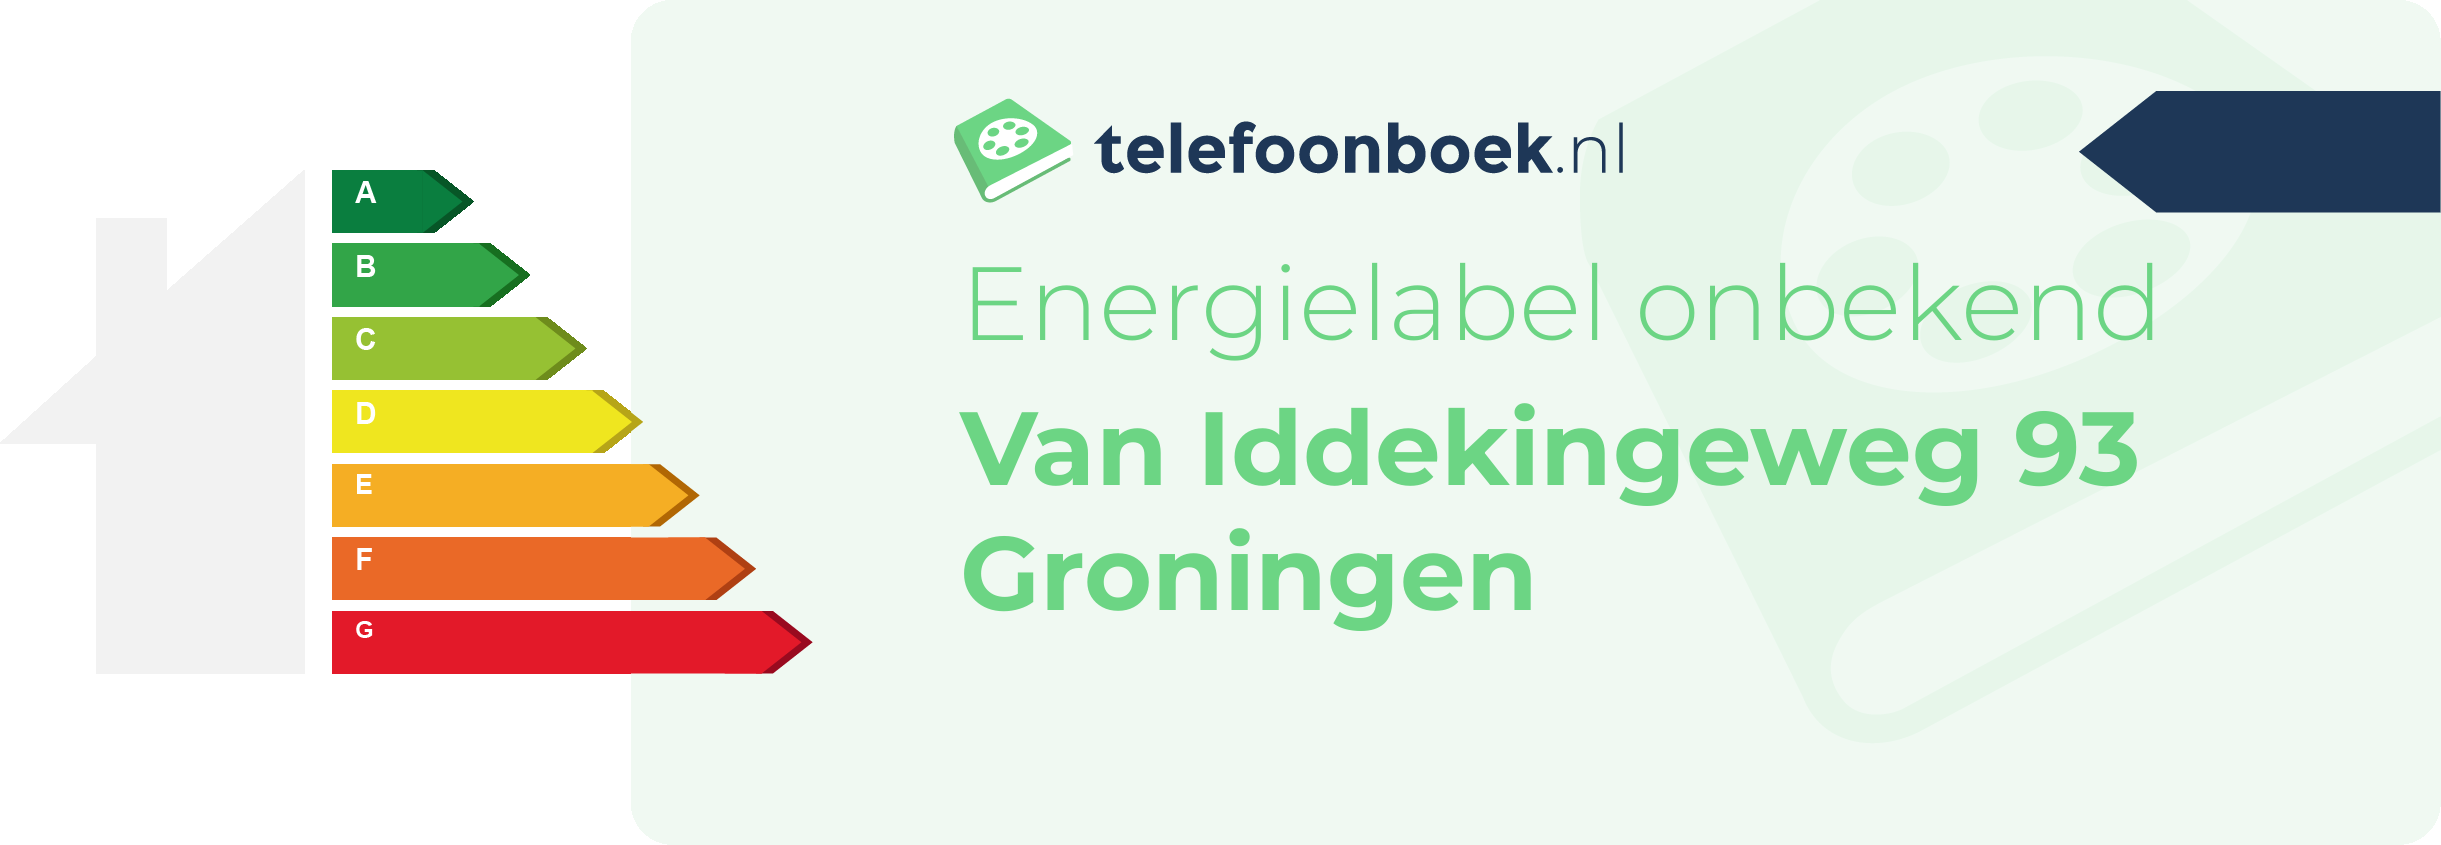 Energielabel Van Iddekingeweg 93 Groningen